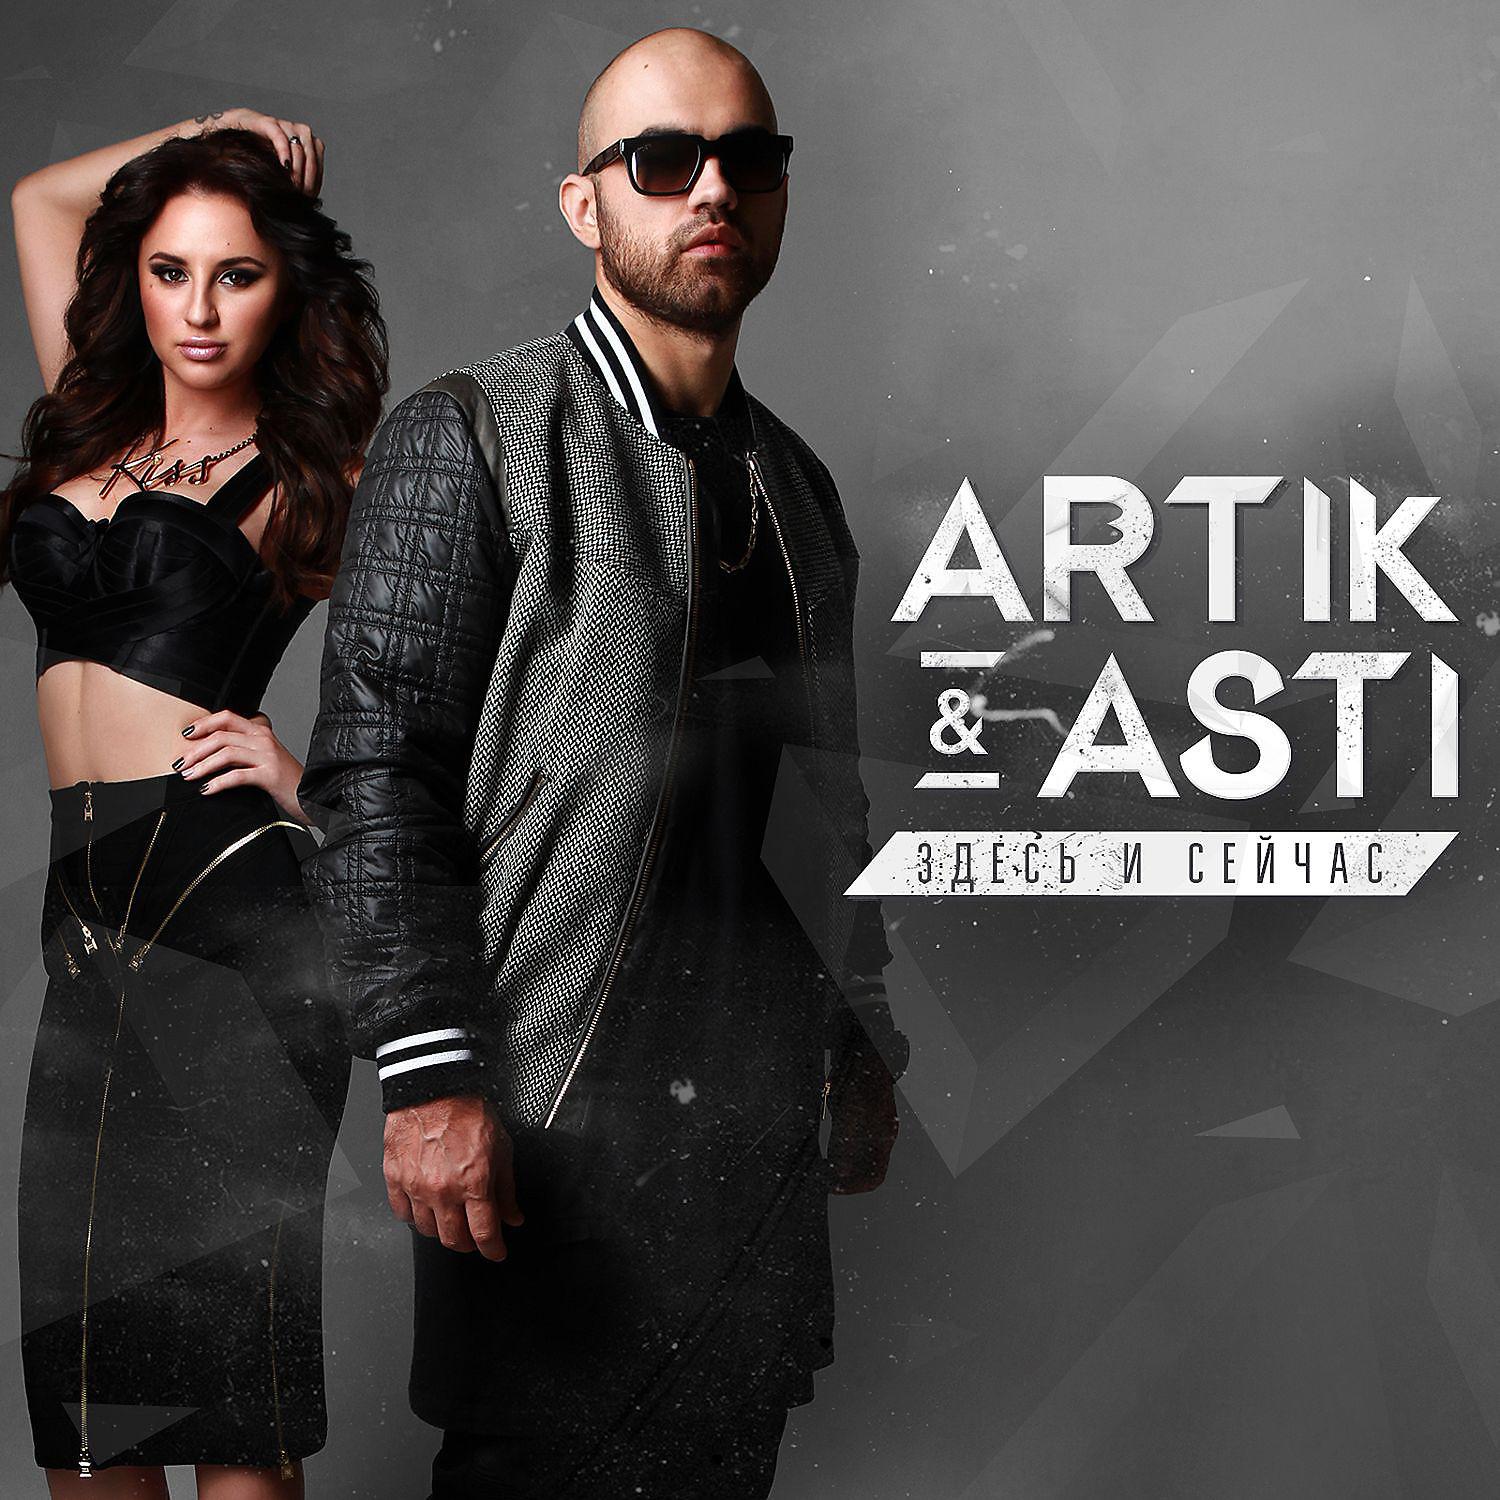 Звонкий новая песня. Артик и Асти. Artik Asti здесь и сейчас 2015. Artik Asti обложка. Артик и Асти 2014.